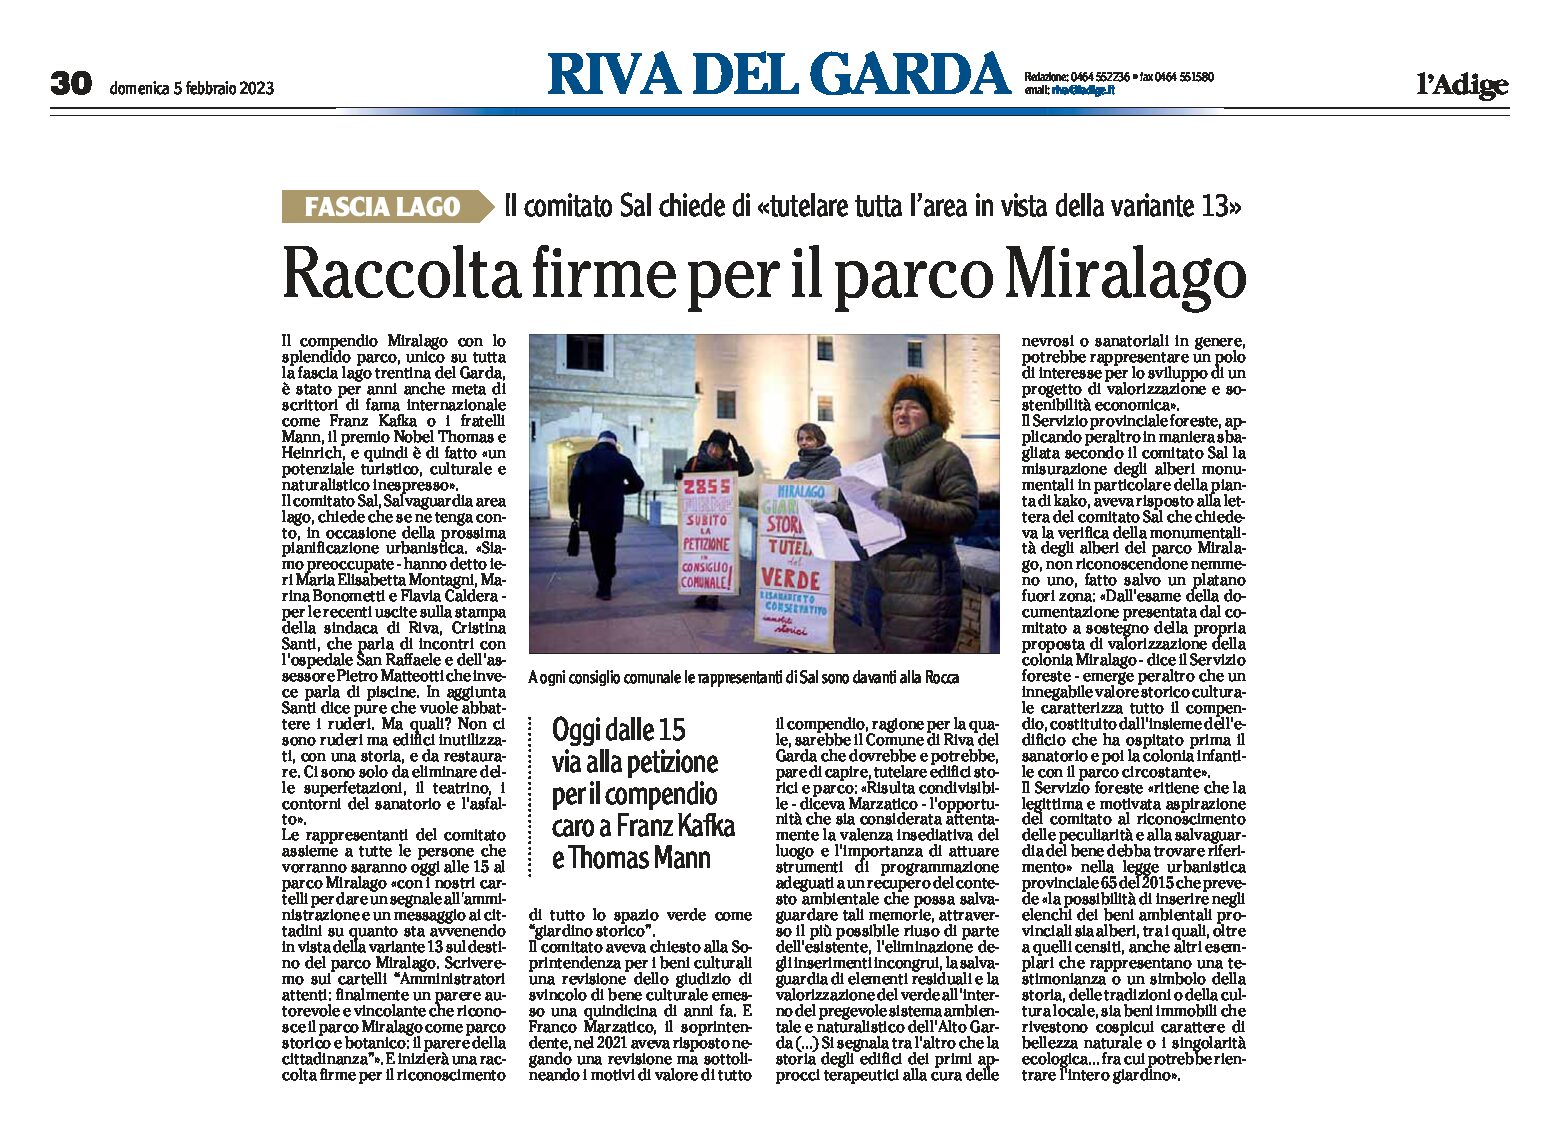 Riva: raccolta firme per il parco Miralago. Il comitato Sal chiede di tutelare l’area